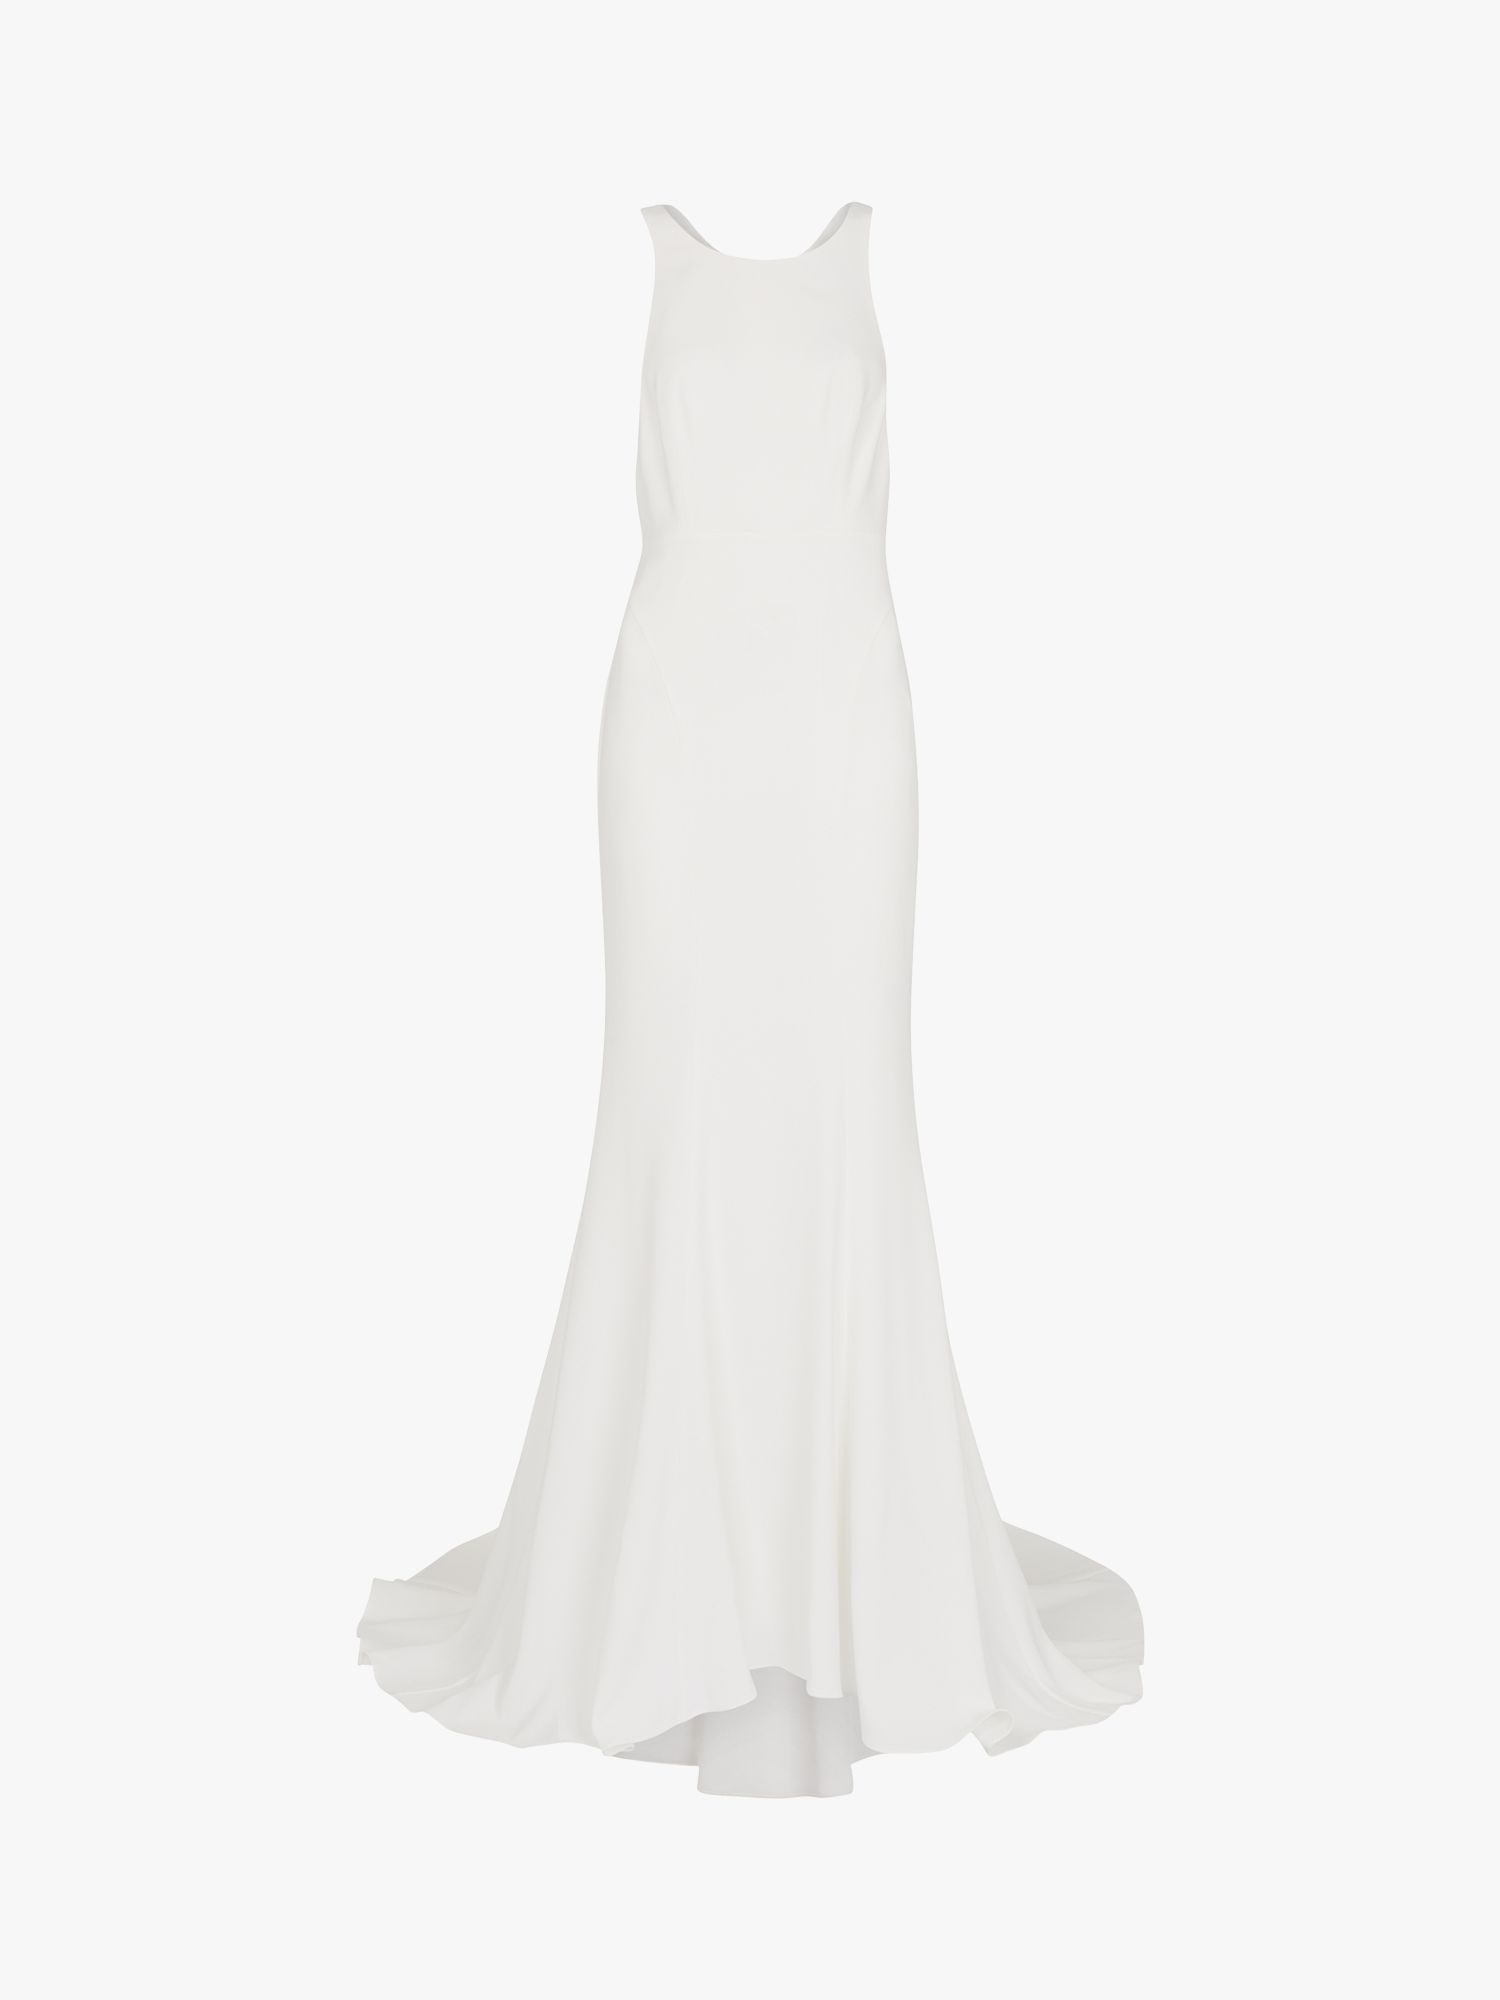 Whistles Lina Lace Wedding Maxi Dress, Ivory, 6